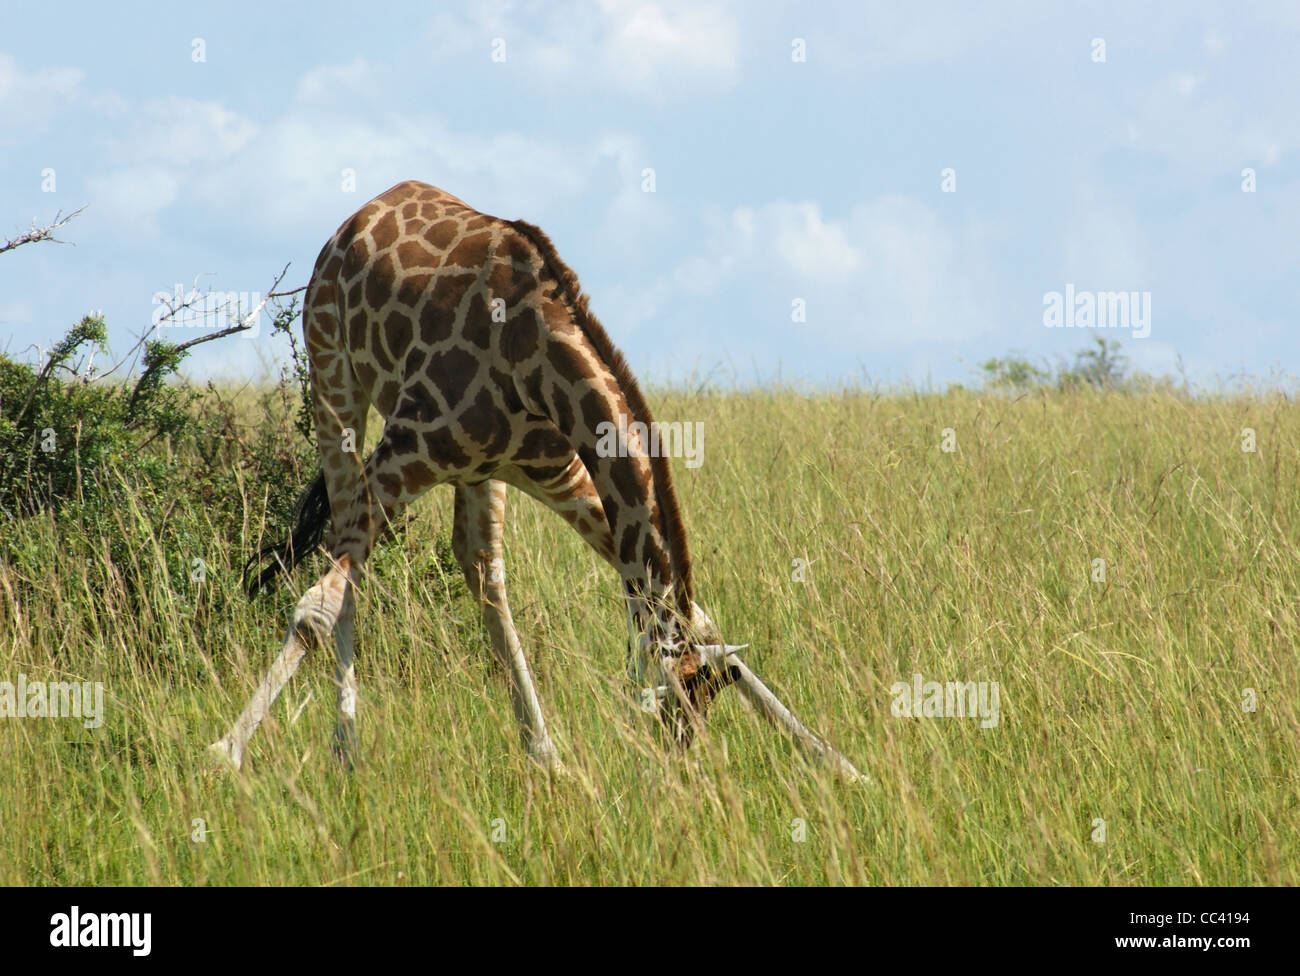 Paysage ensoleillé y compris une girafe Rothschild en Ouganda (Afrique) alors que le pâturage Banque D'Images